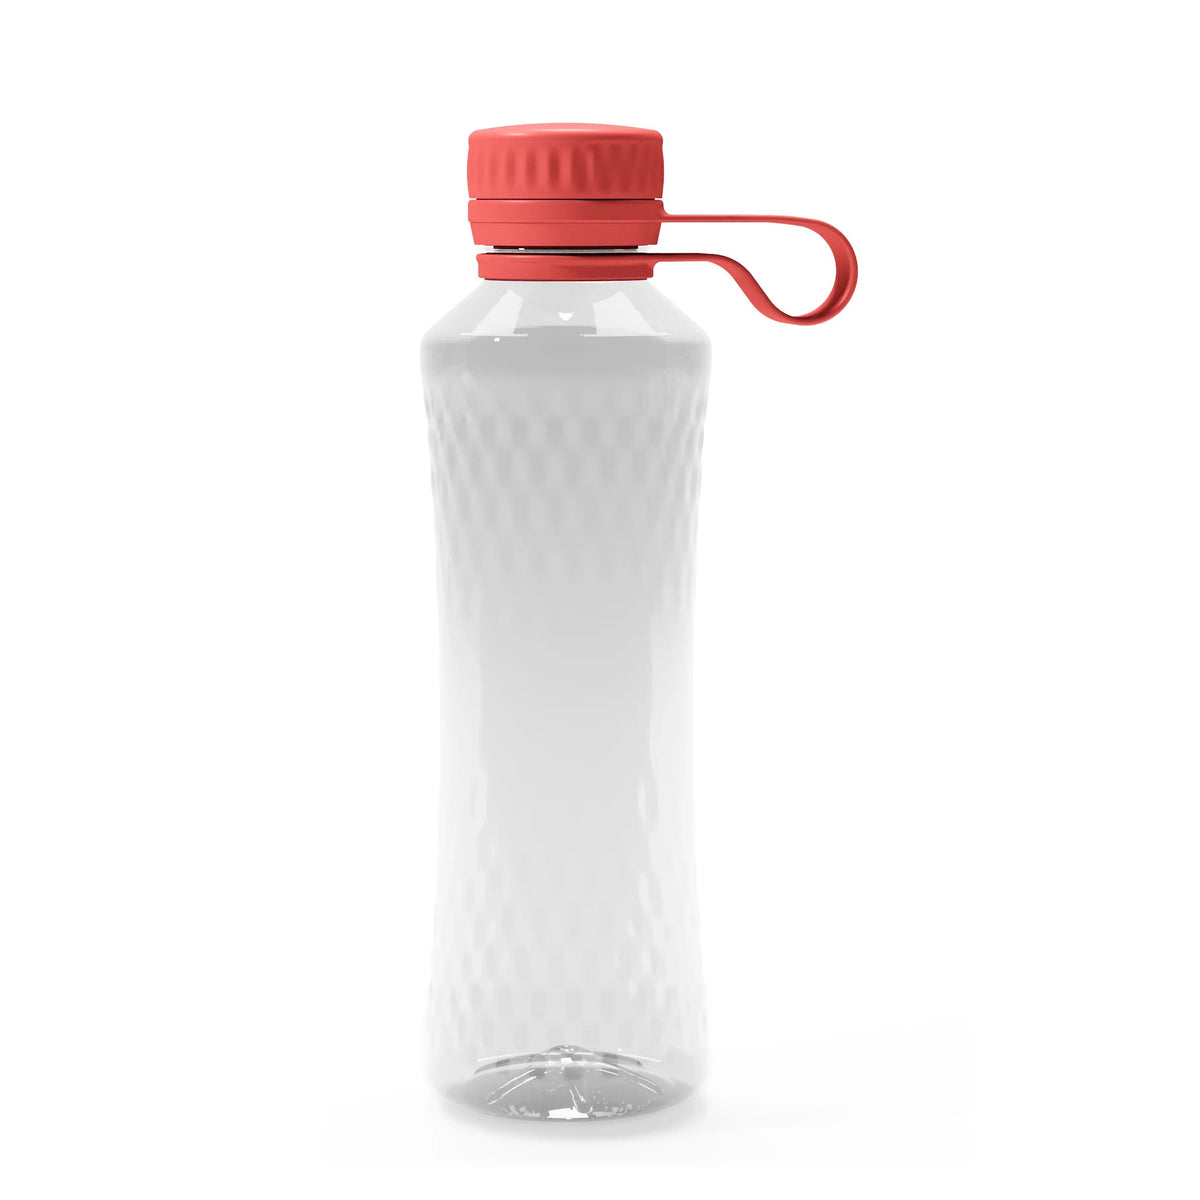 Eco Water Bottle 500ml - BRIT LOCKER